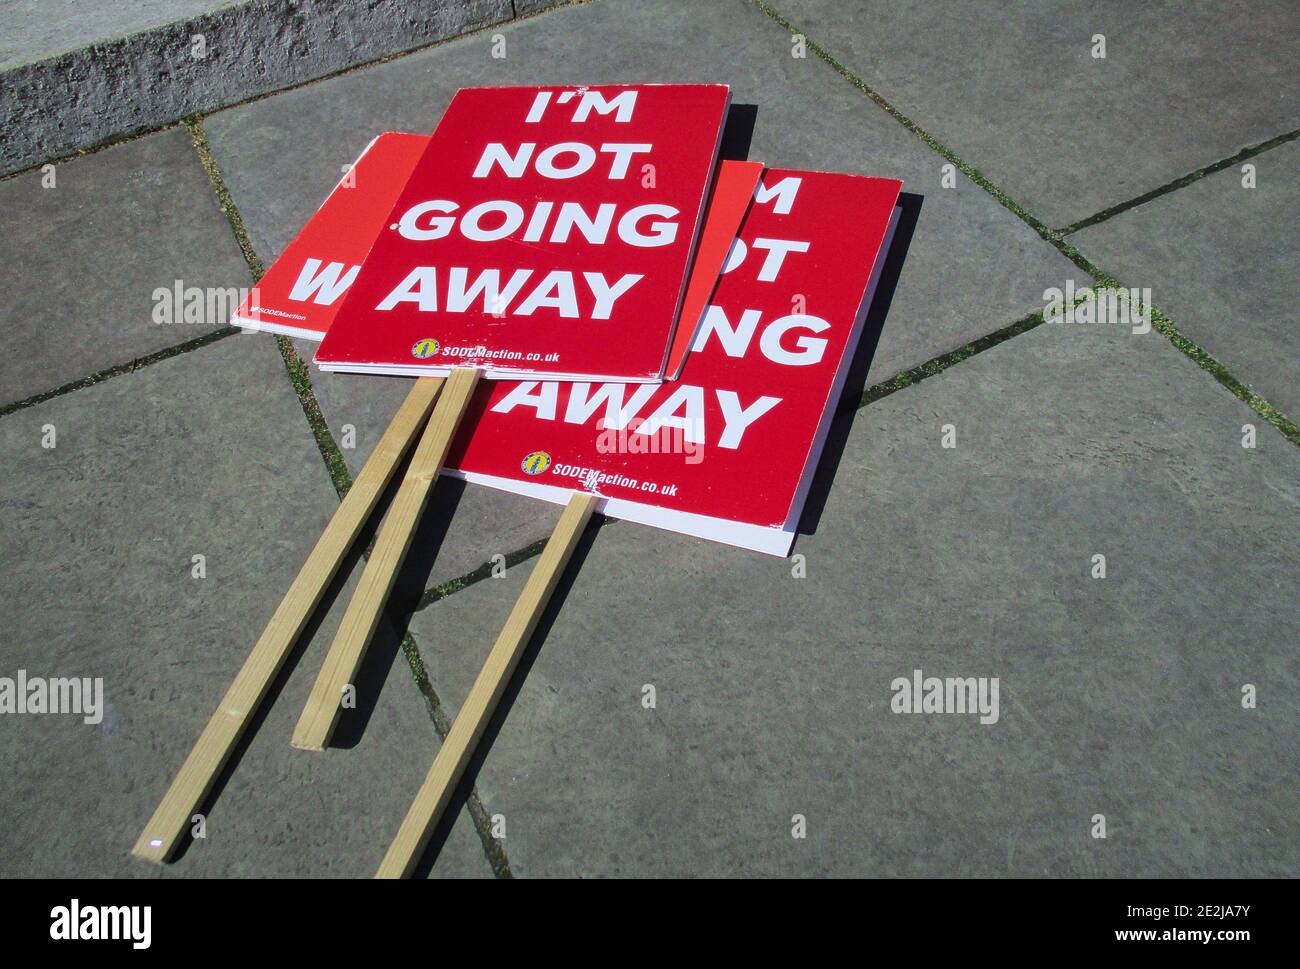 Panneaux de protestation anti-Brexit devant les chambres du Parlement « Je ne vais pas loin » Westminster, Londres, Royaume-Uni. Banque D'Images